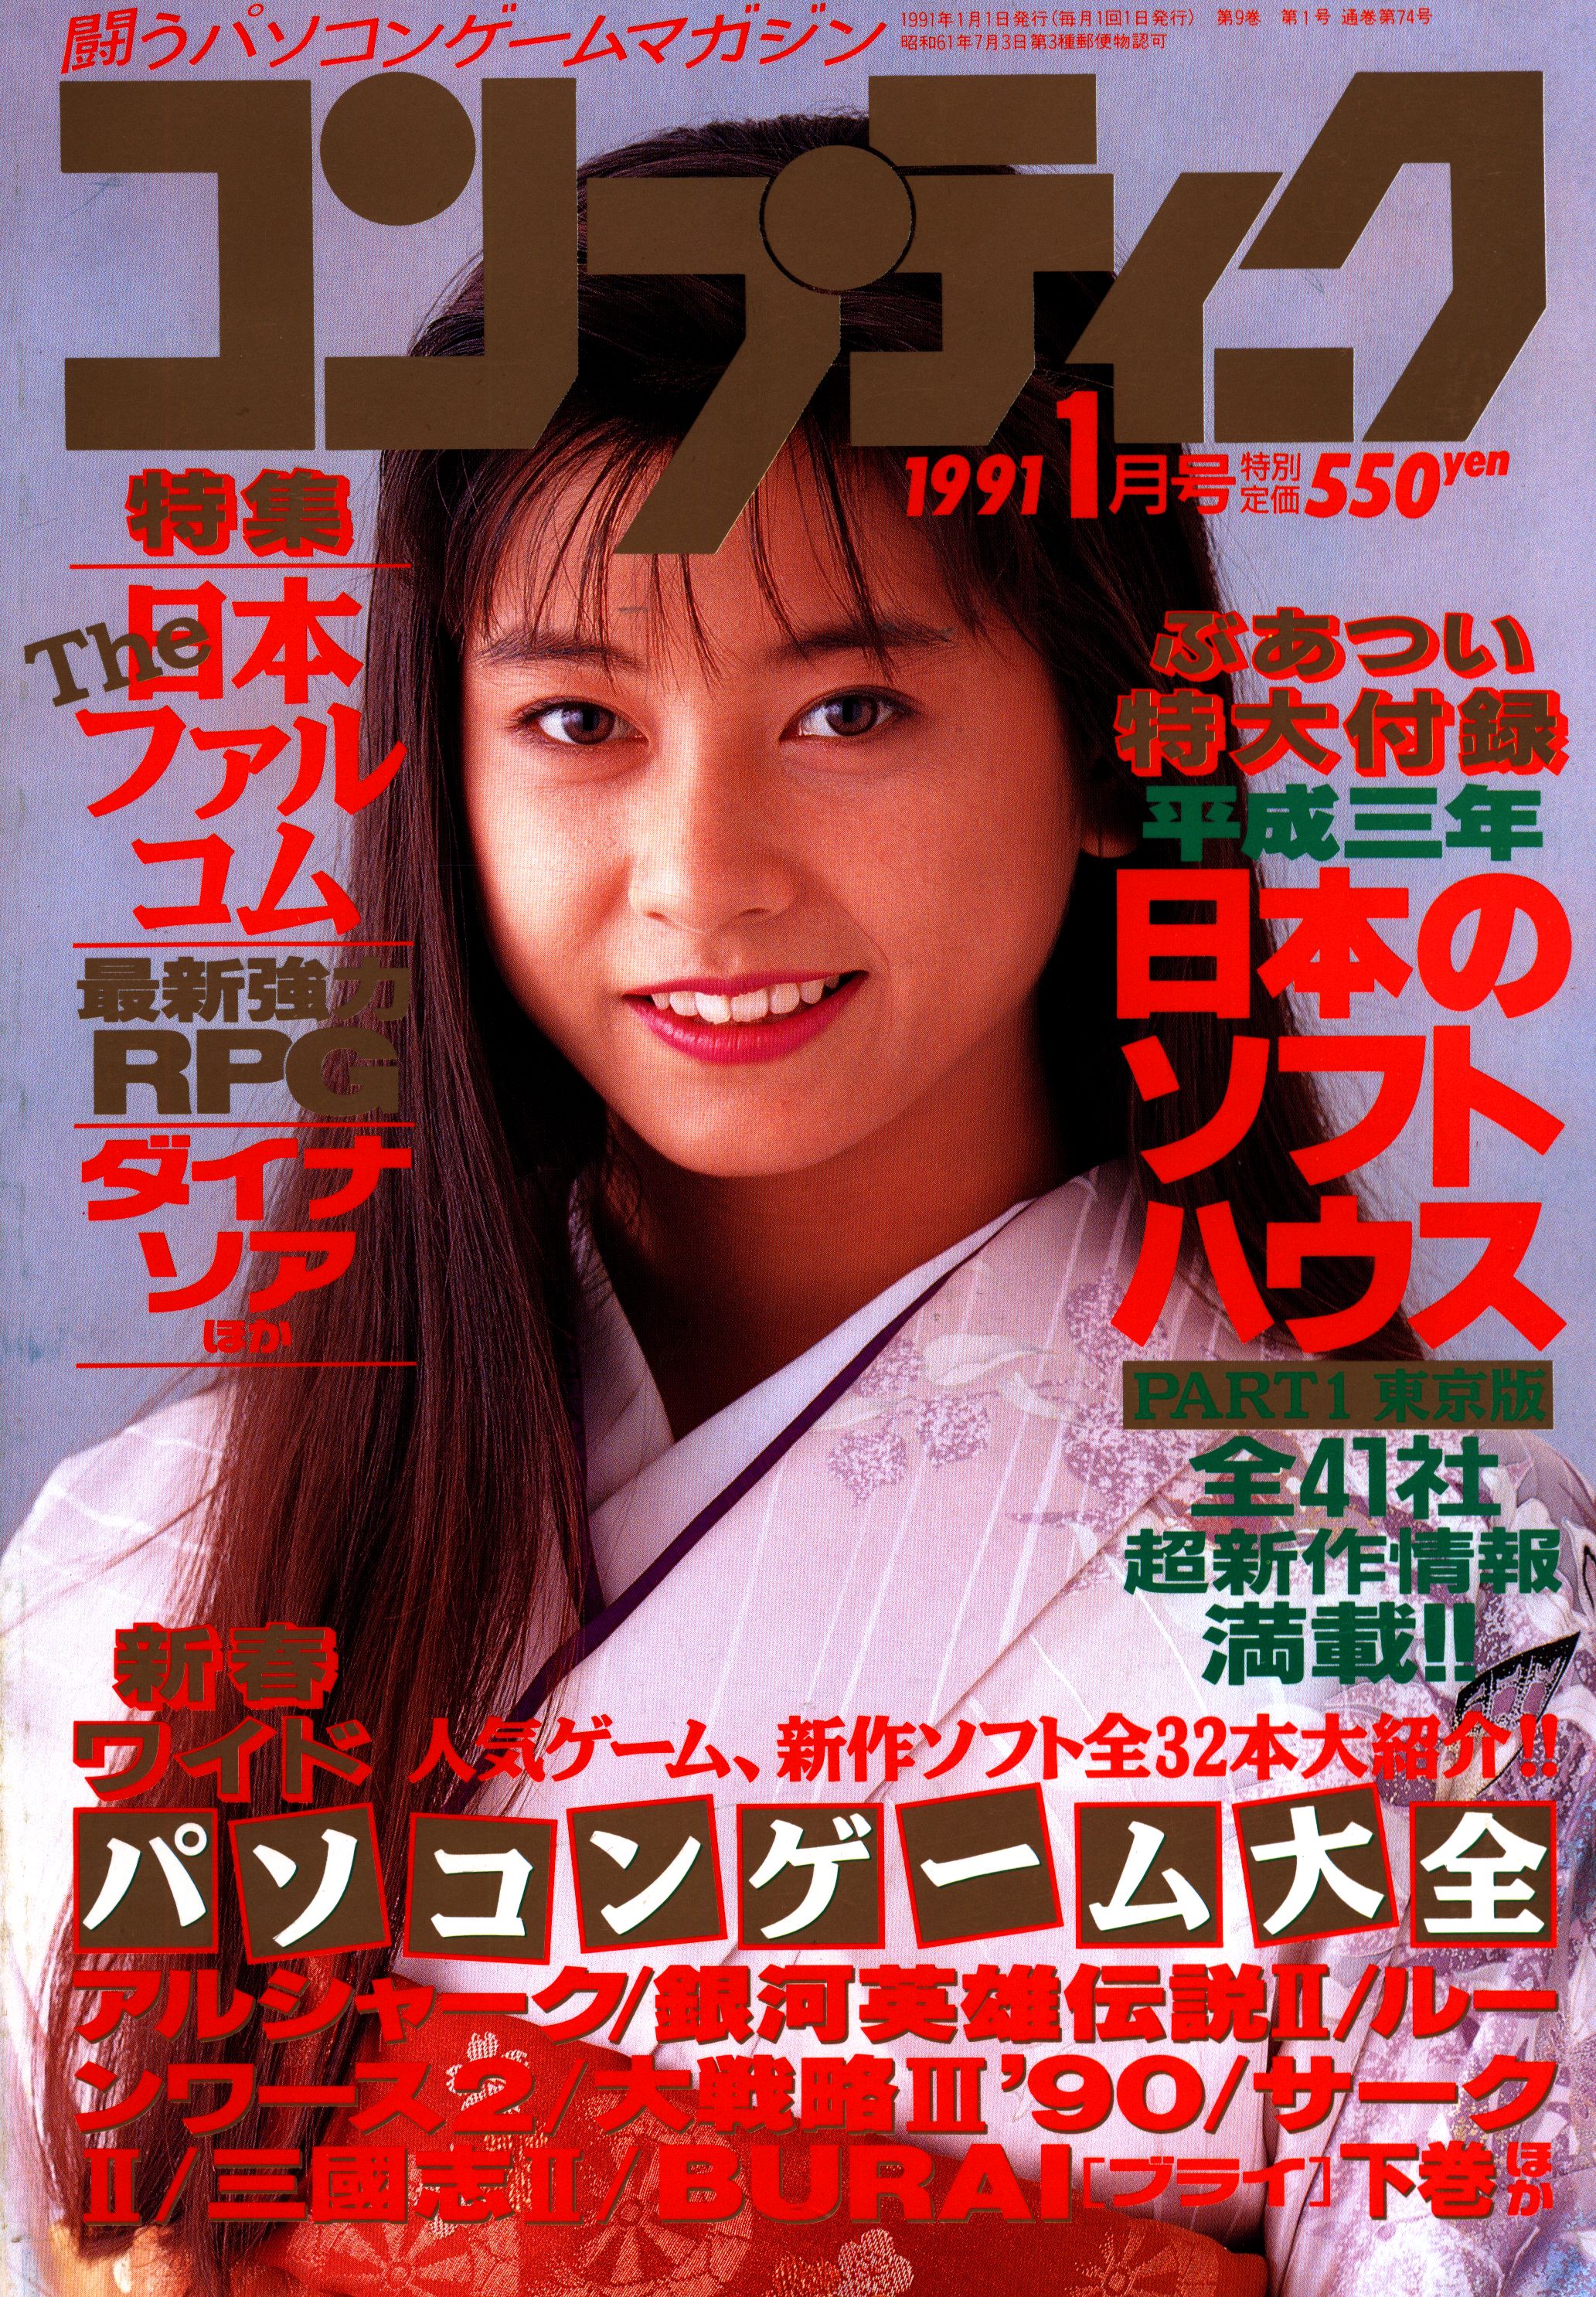 角川書店 1991年(平成3年)のゲーム雑誌 コンプティーク 1991年(平成3年